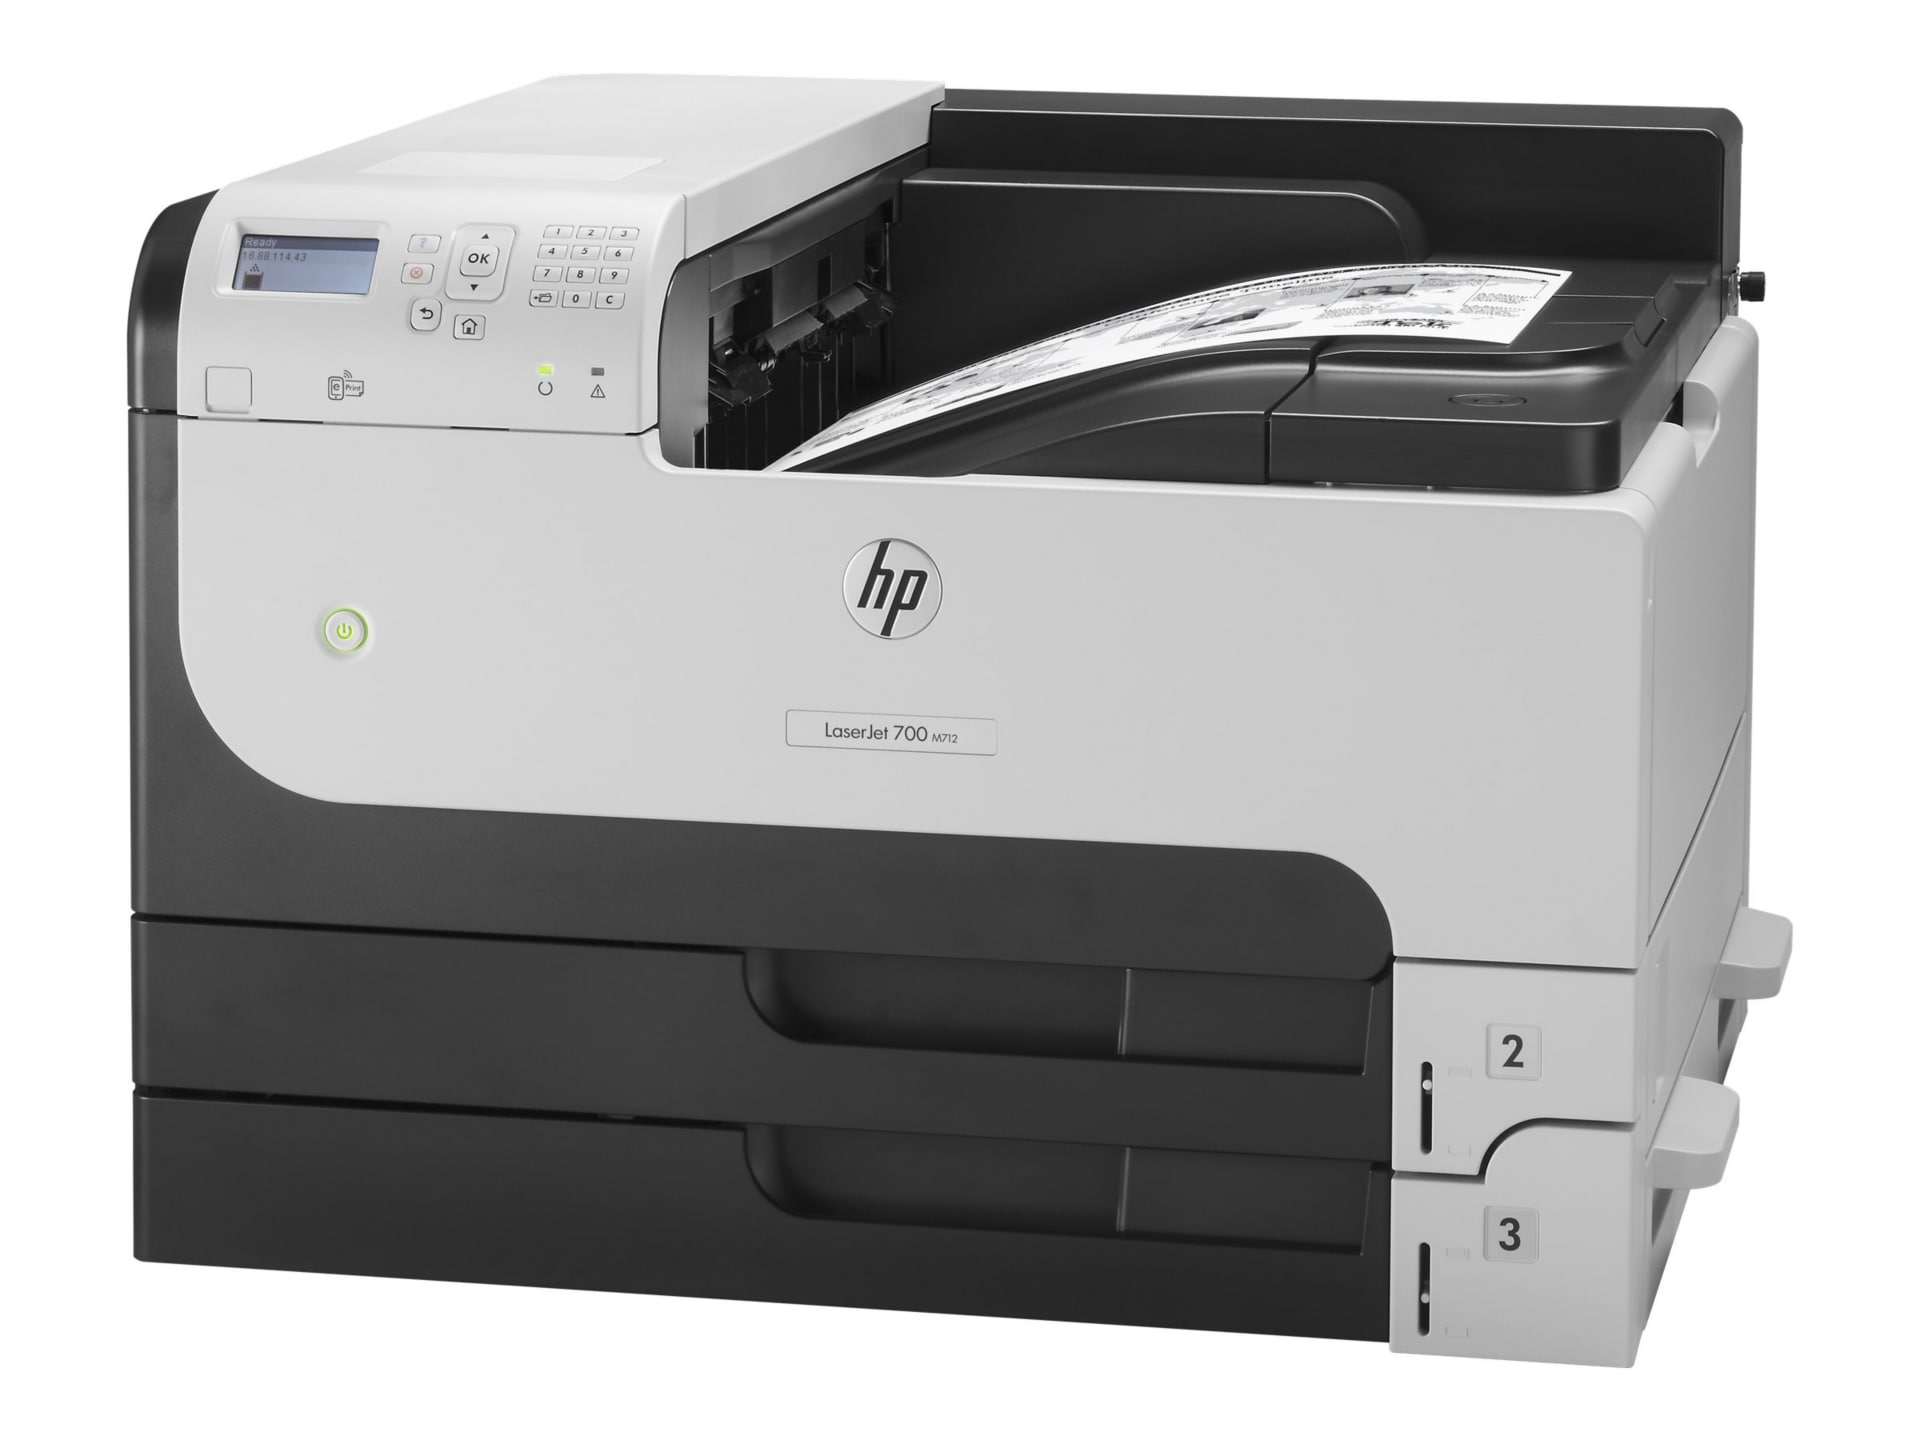 LaserJet Enterprise 700 Printer M712dn - printer - B/W - laser - CF236A#BGJ Laser - CDW.com